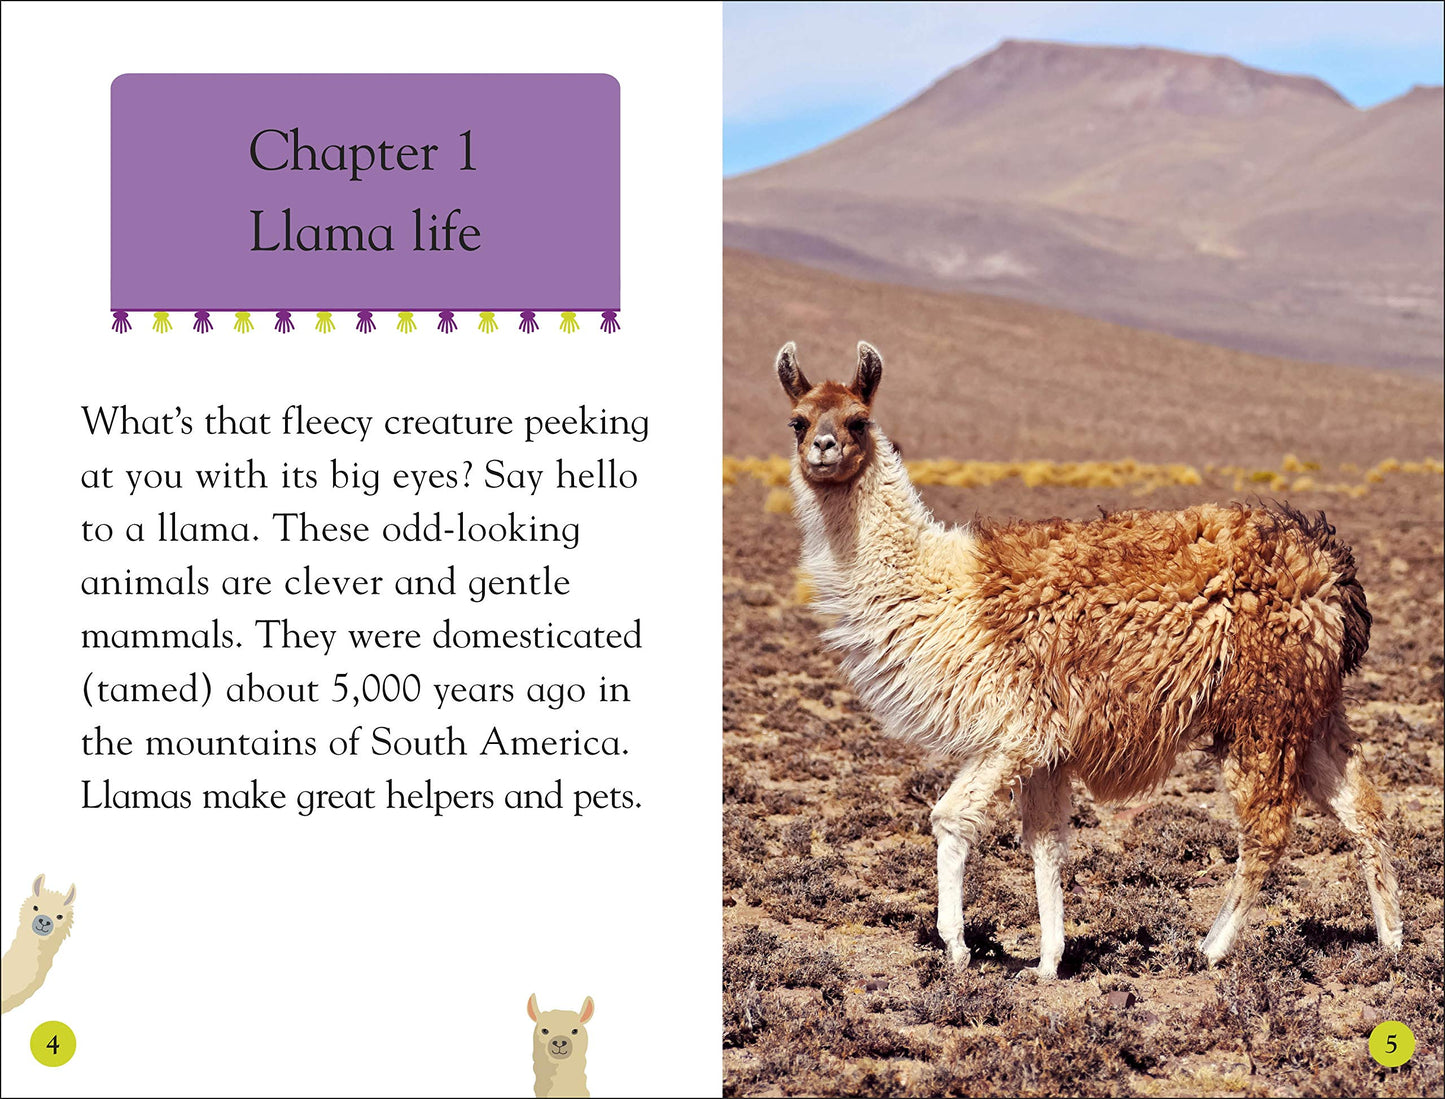 DK Readers Level 2: Llamas